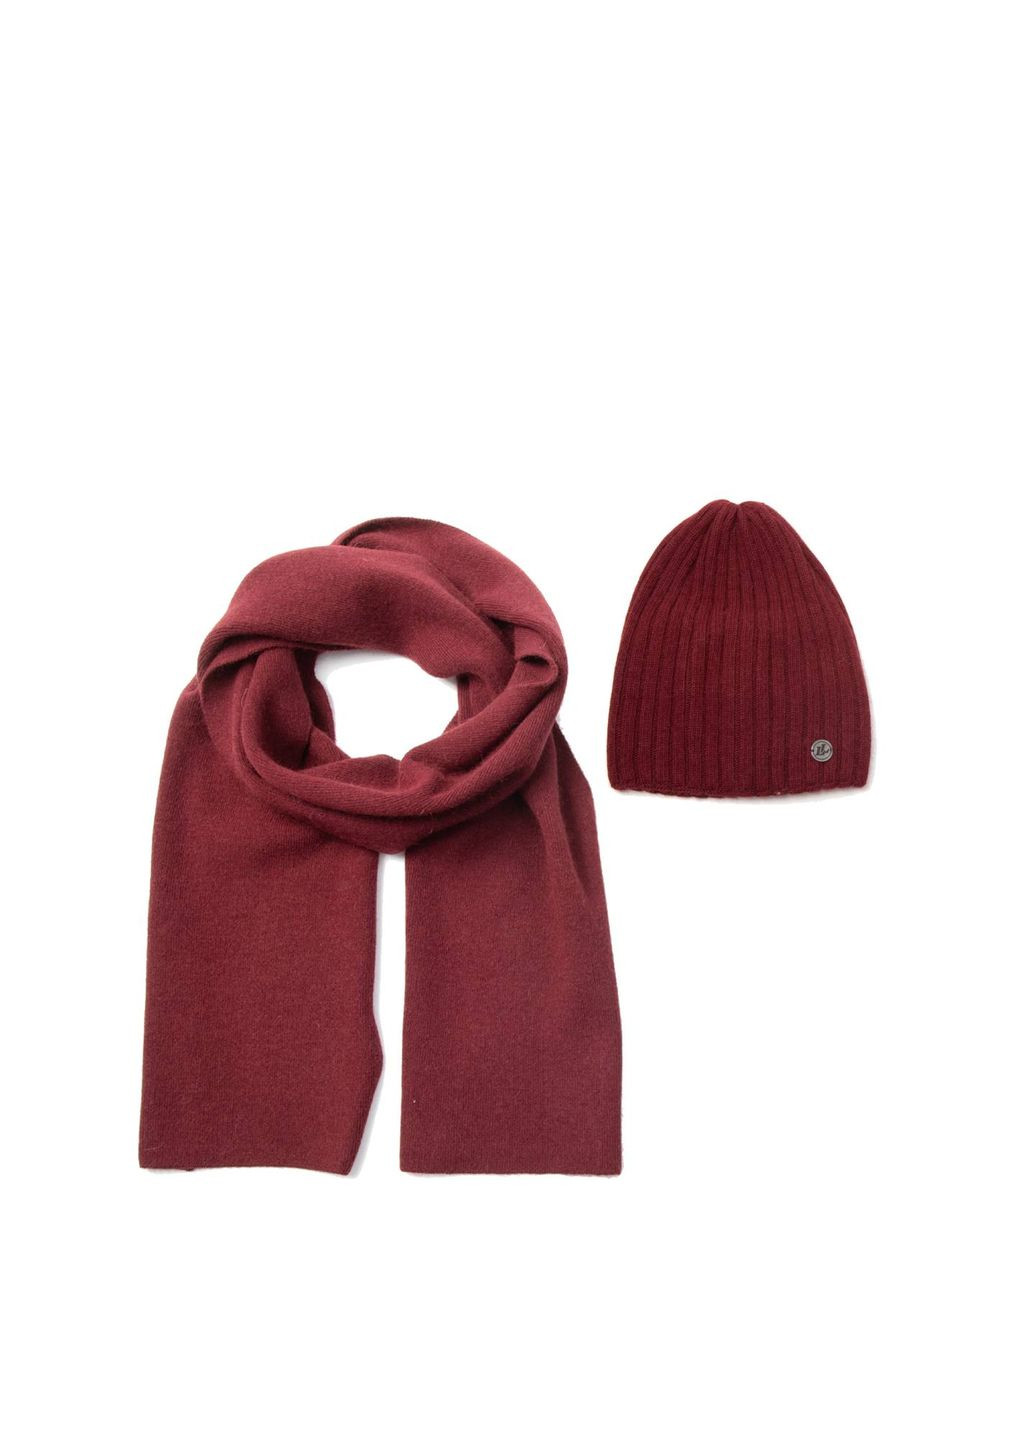 Набор шапка колпак + шарф мужской шерсть бордовый LIORA 237-223 LuckyLOOK 237-223m (289359327)